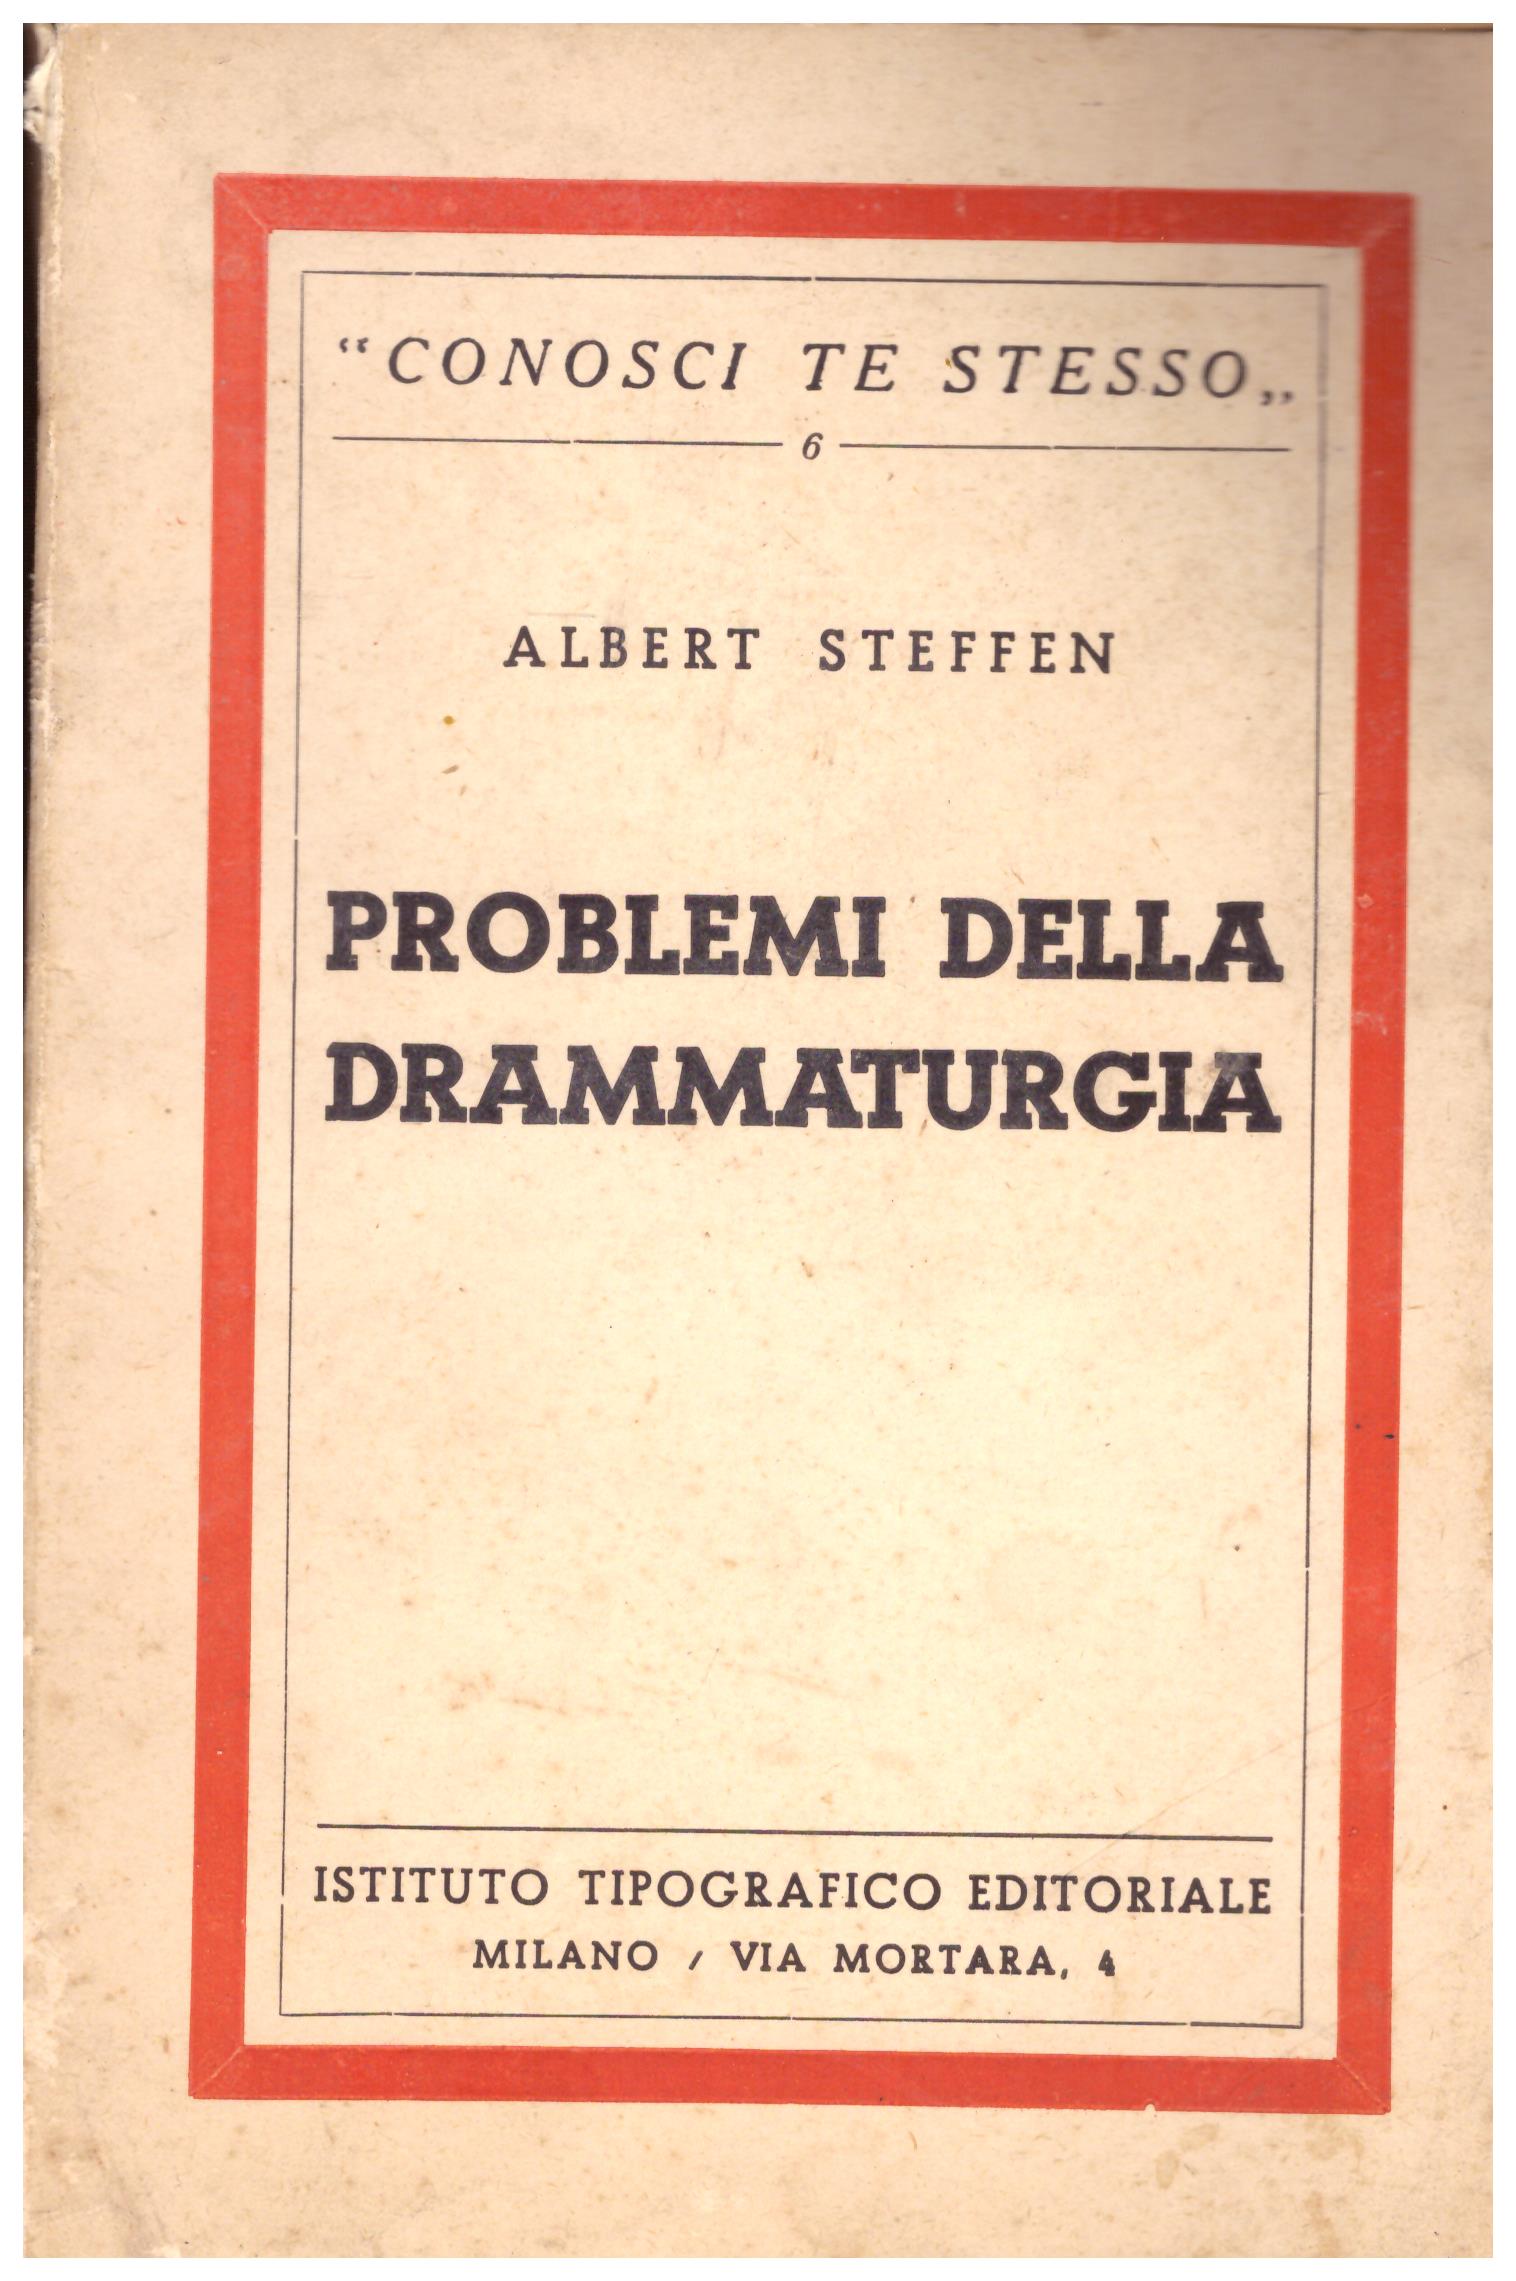 Titolo: Problemi della drammaturgia Autore: Albert Steffen Editore: istituto tipografico editoriale Milano, 1936